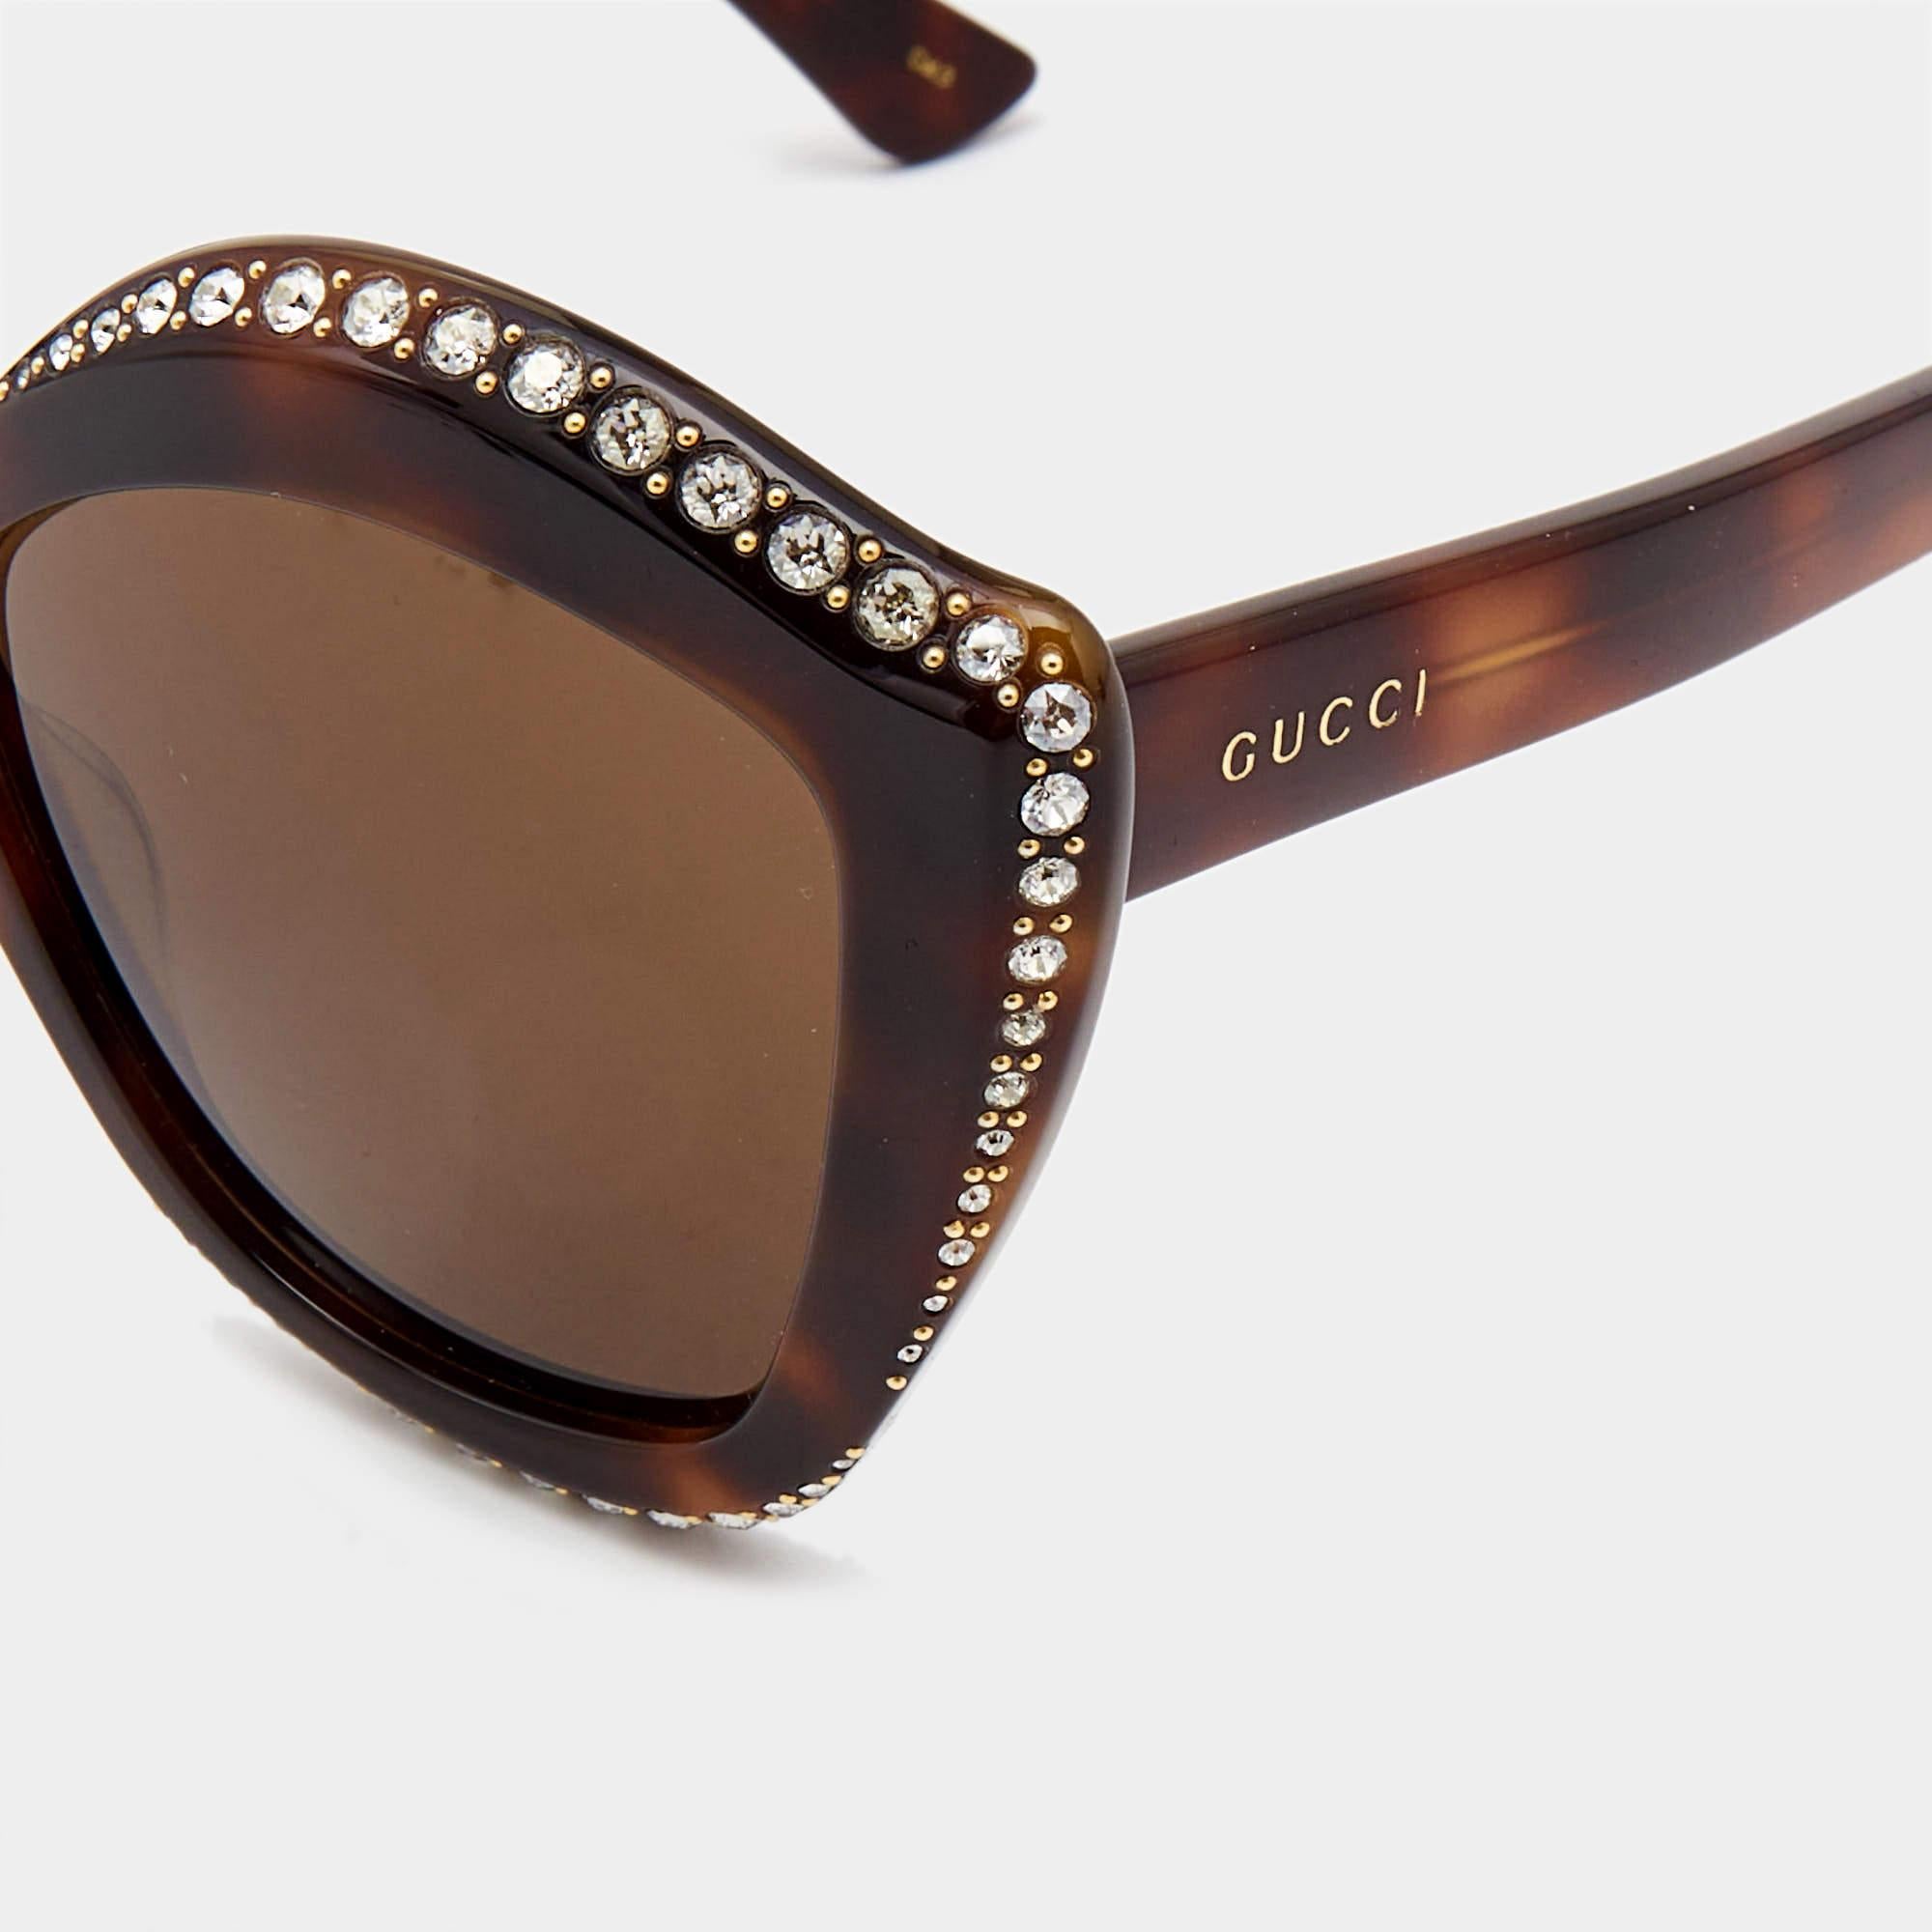 Wir sehen die Details dieser exquisiten Designer-Sonnenbrille, die aus edlen Materialien gefertigt ist. Die Sonnenbrille ist luxuriös in der Anmutung und praktisch im Gebrauch.

Enthält
Original-Beutel